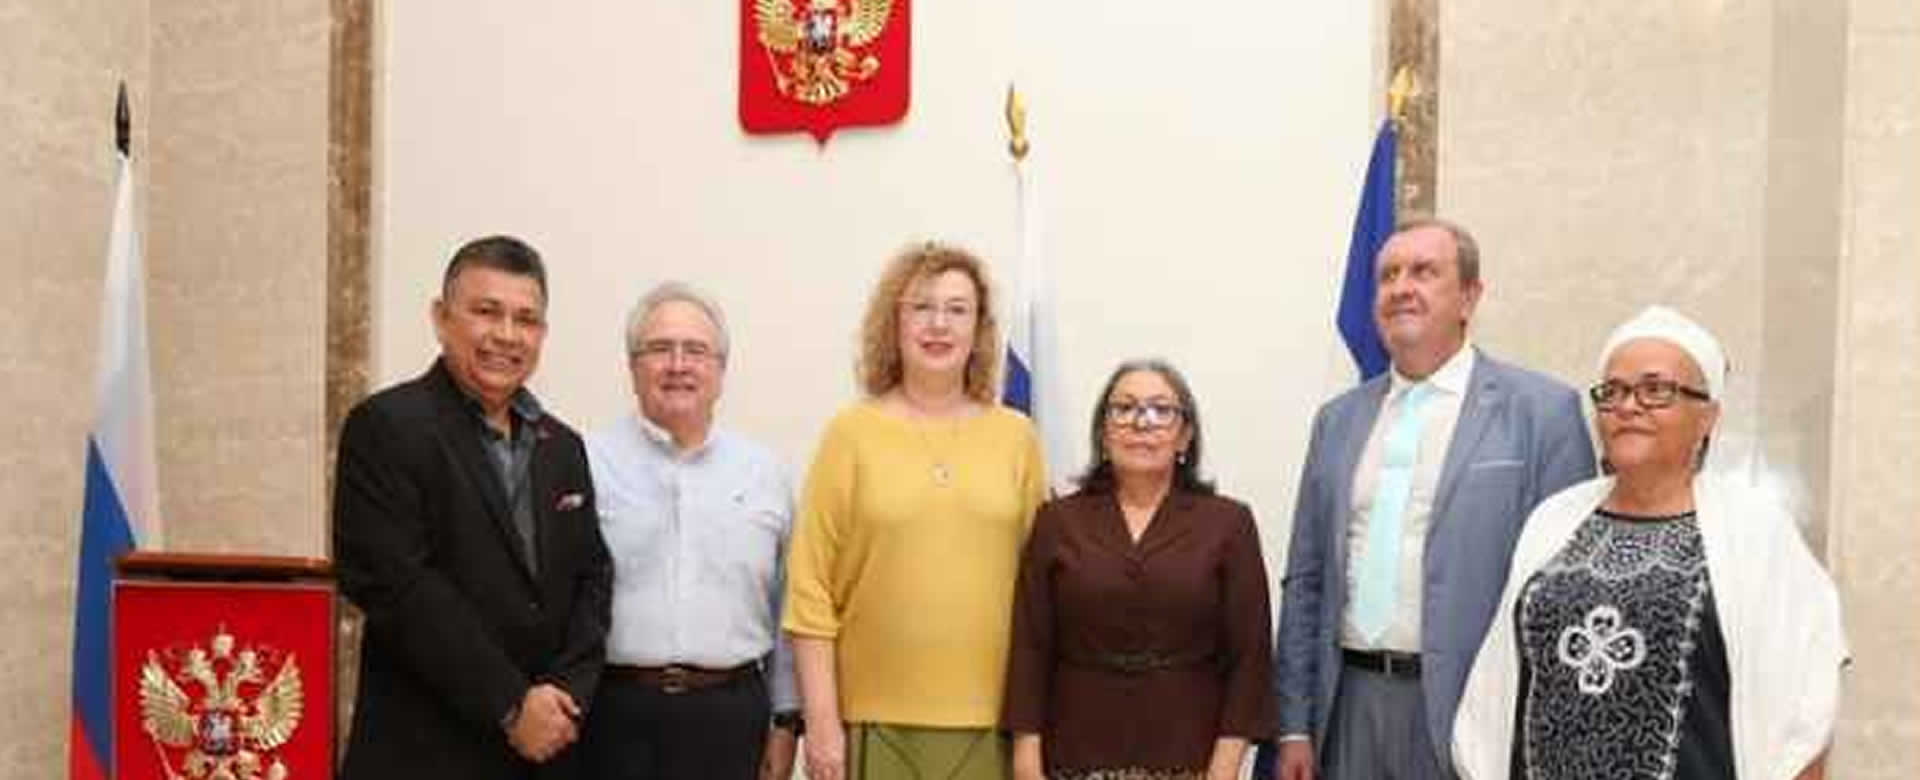 Embajada de Rusia y Nicaragua celebran 75 años de buna relación